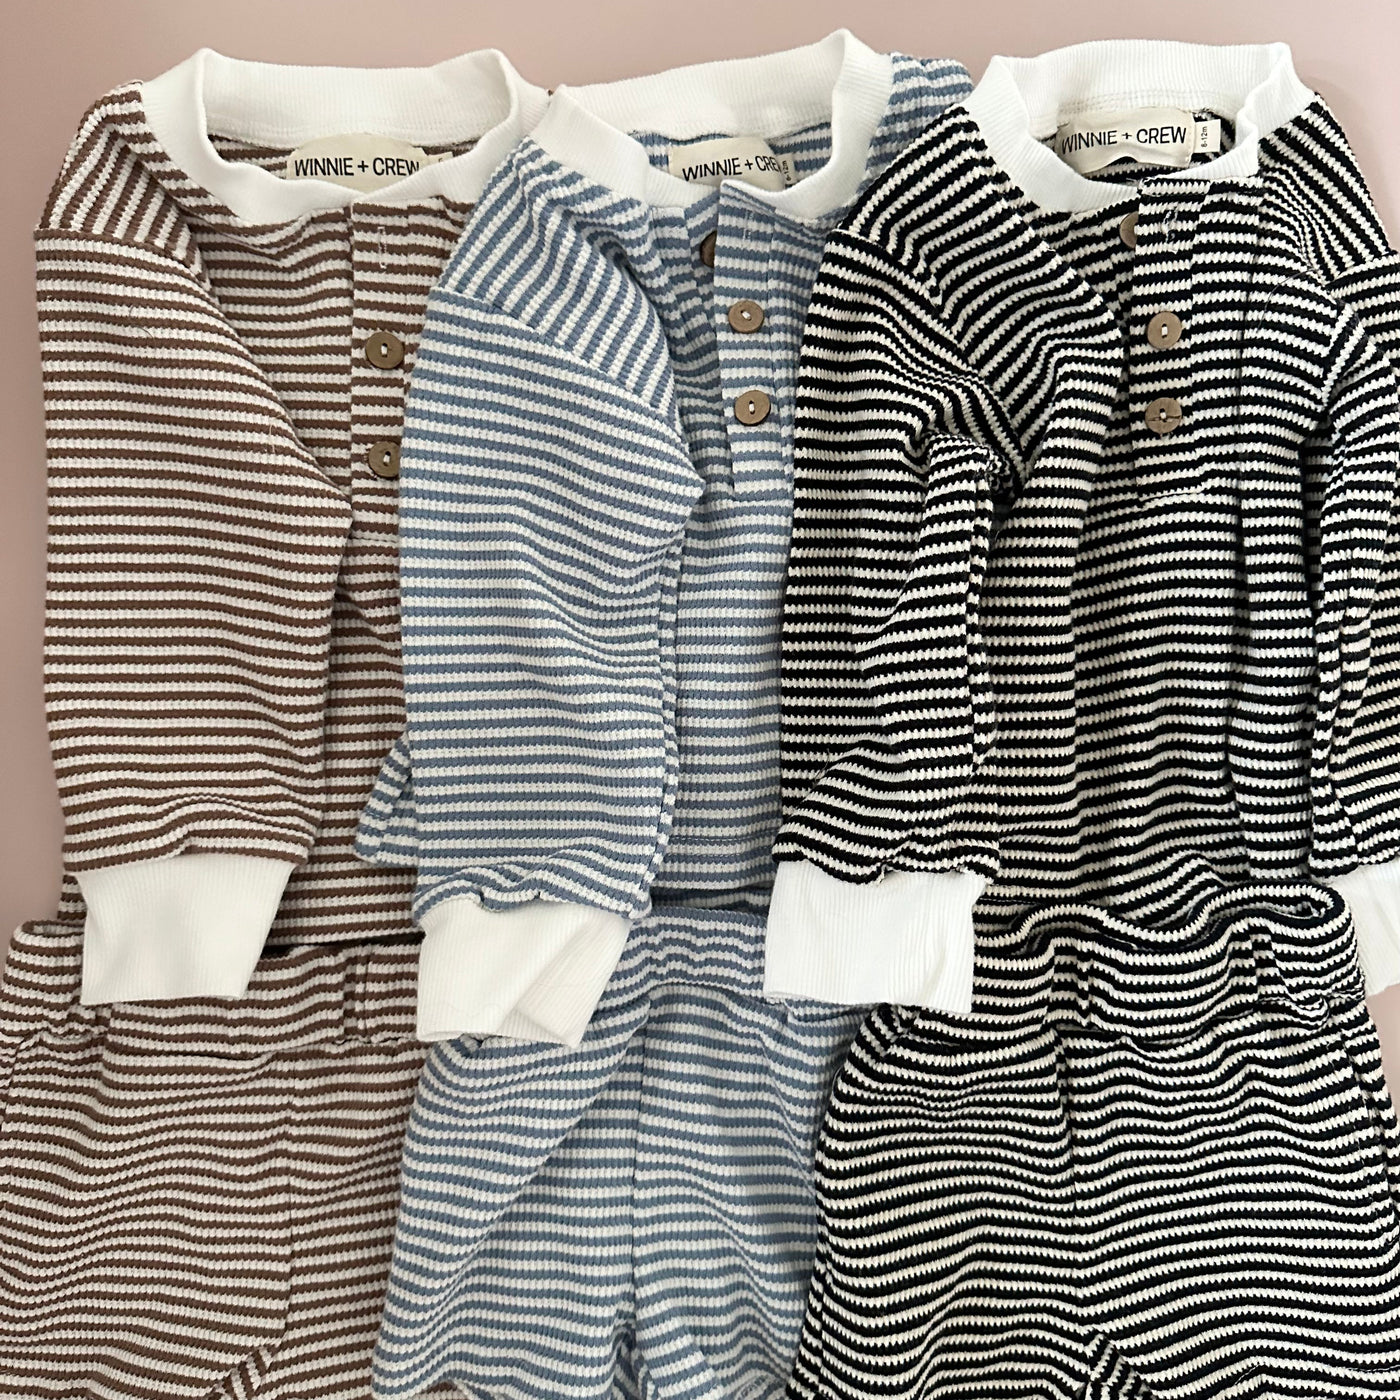 a group of striped pajamas